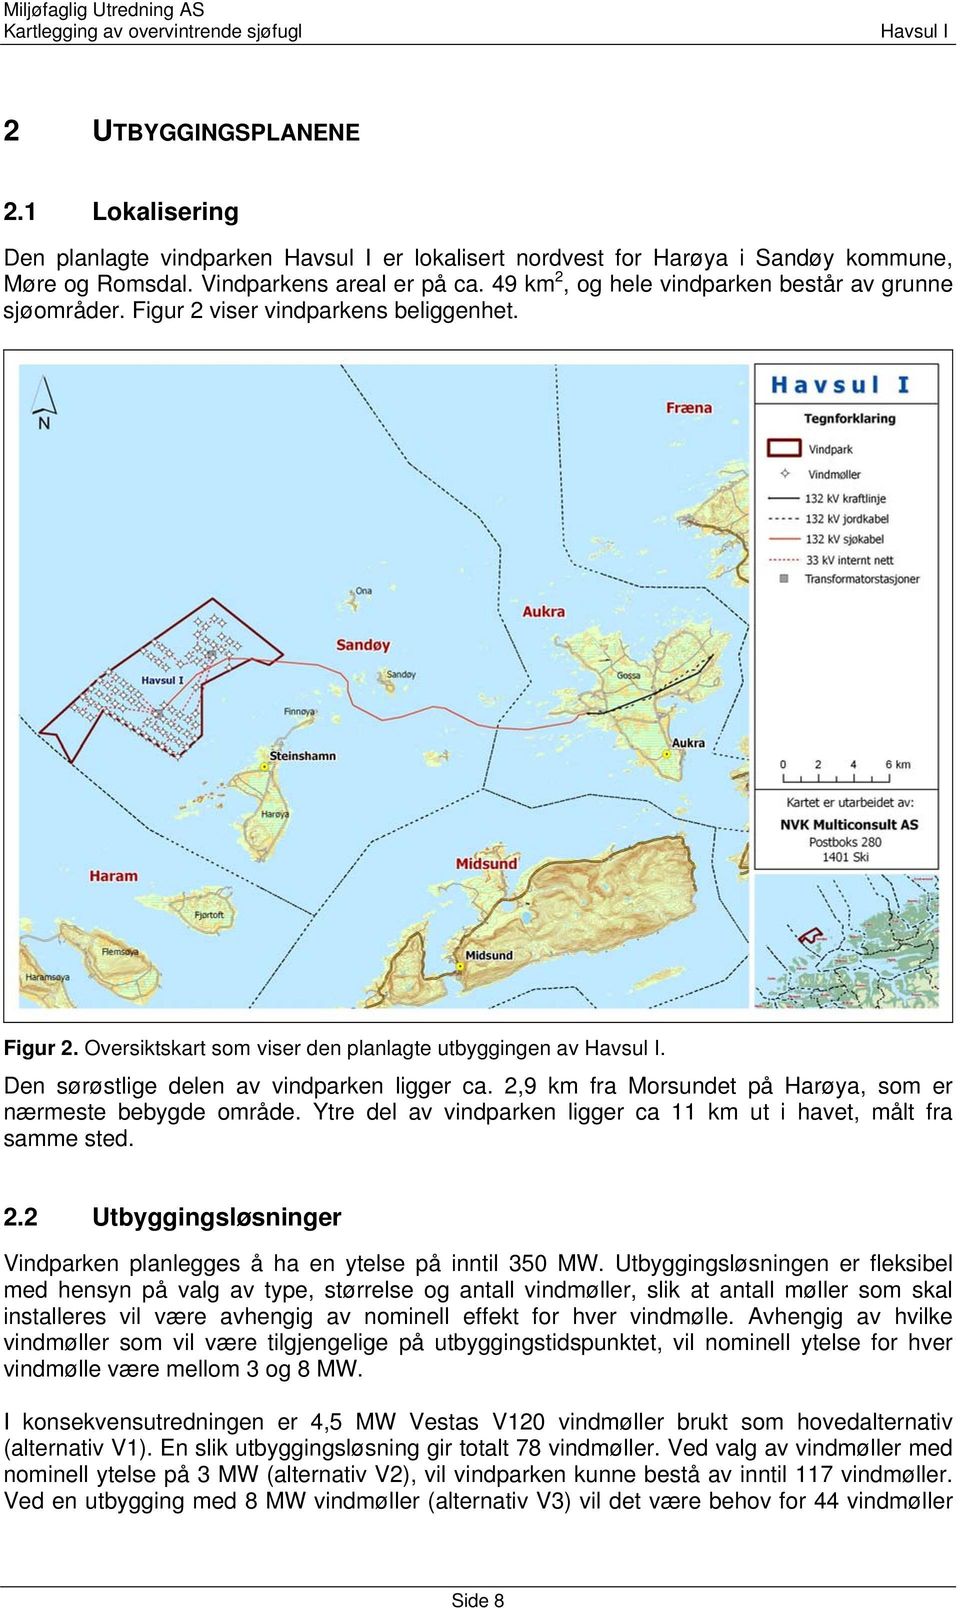 Den sørøstlige delen av vindparken ligger ca. 2,9 km fra Morsundet på Harøya, som er nærmeste bebygde område. Ytre del av vindparken ligger ca 11 km ut i havet, målt fra samme sted. 2.2 Utbyggingsløsninger Vindparken planlegges å ha en ytelse på inntil 350 MW.